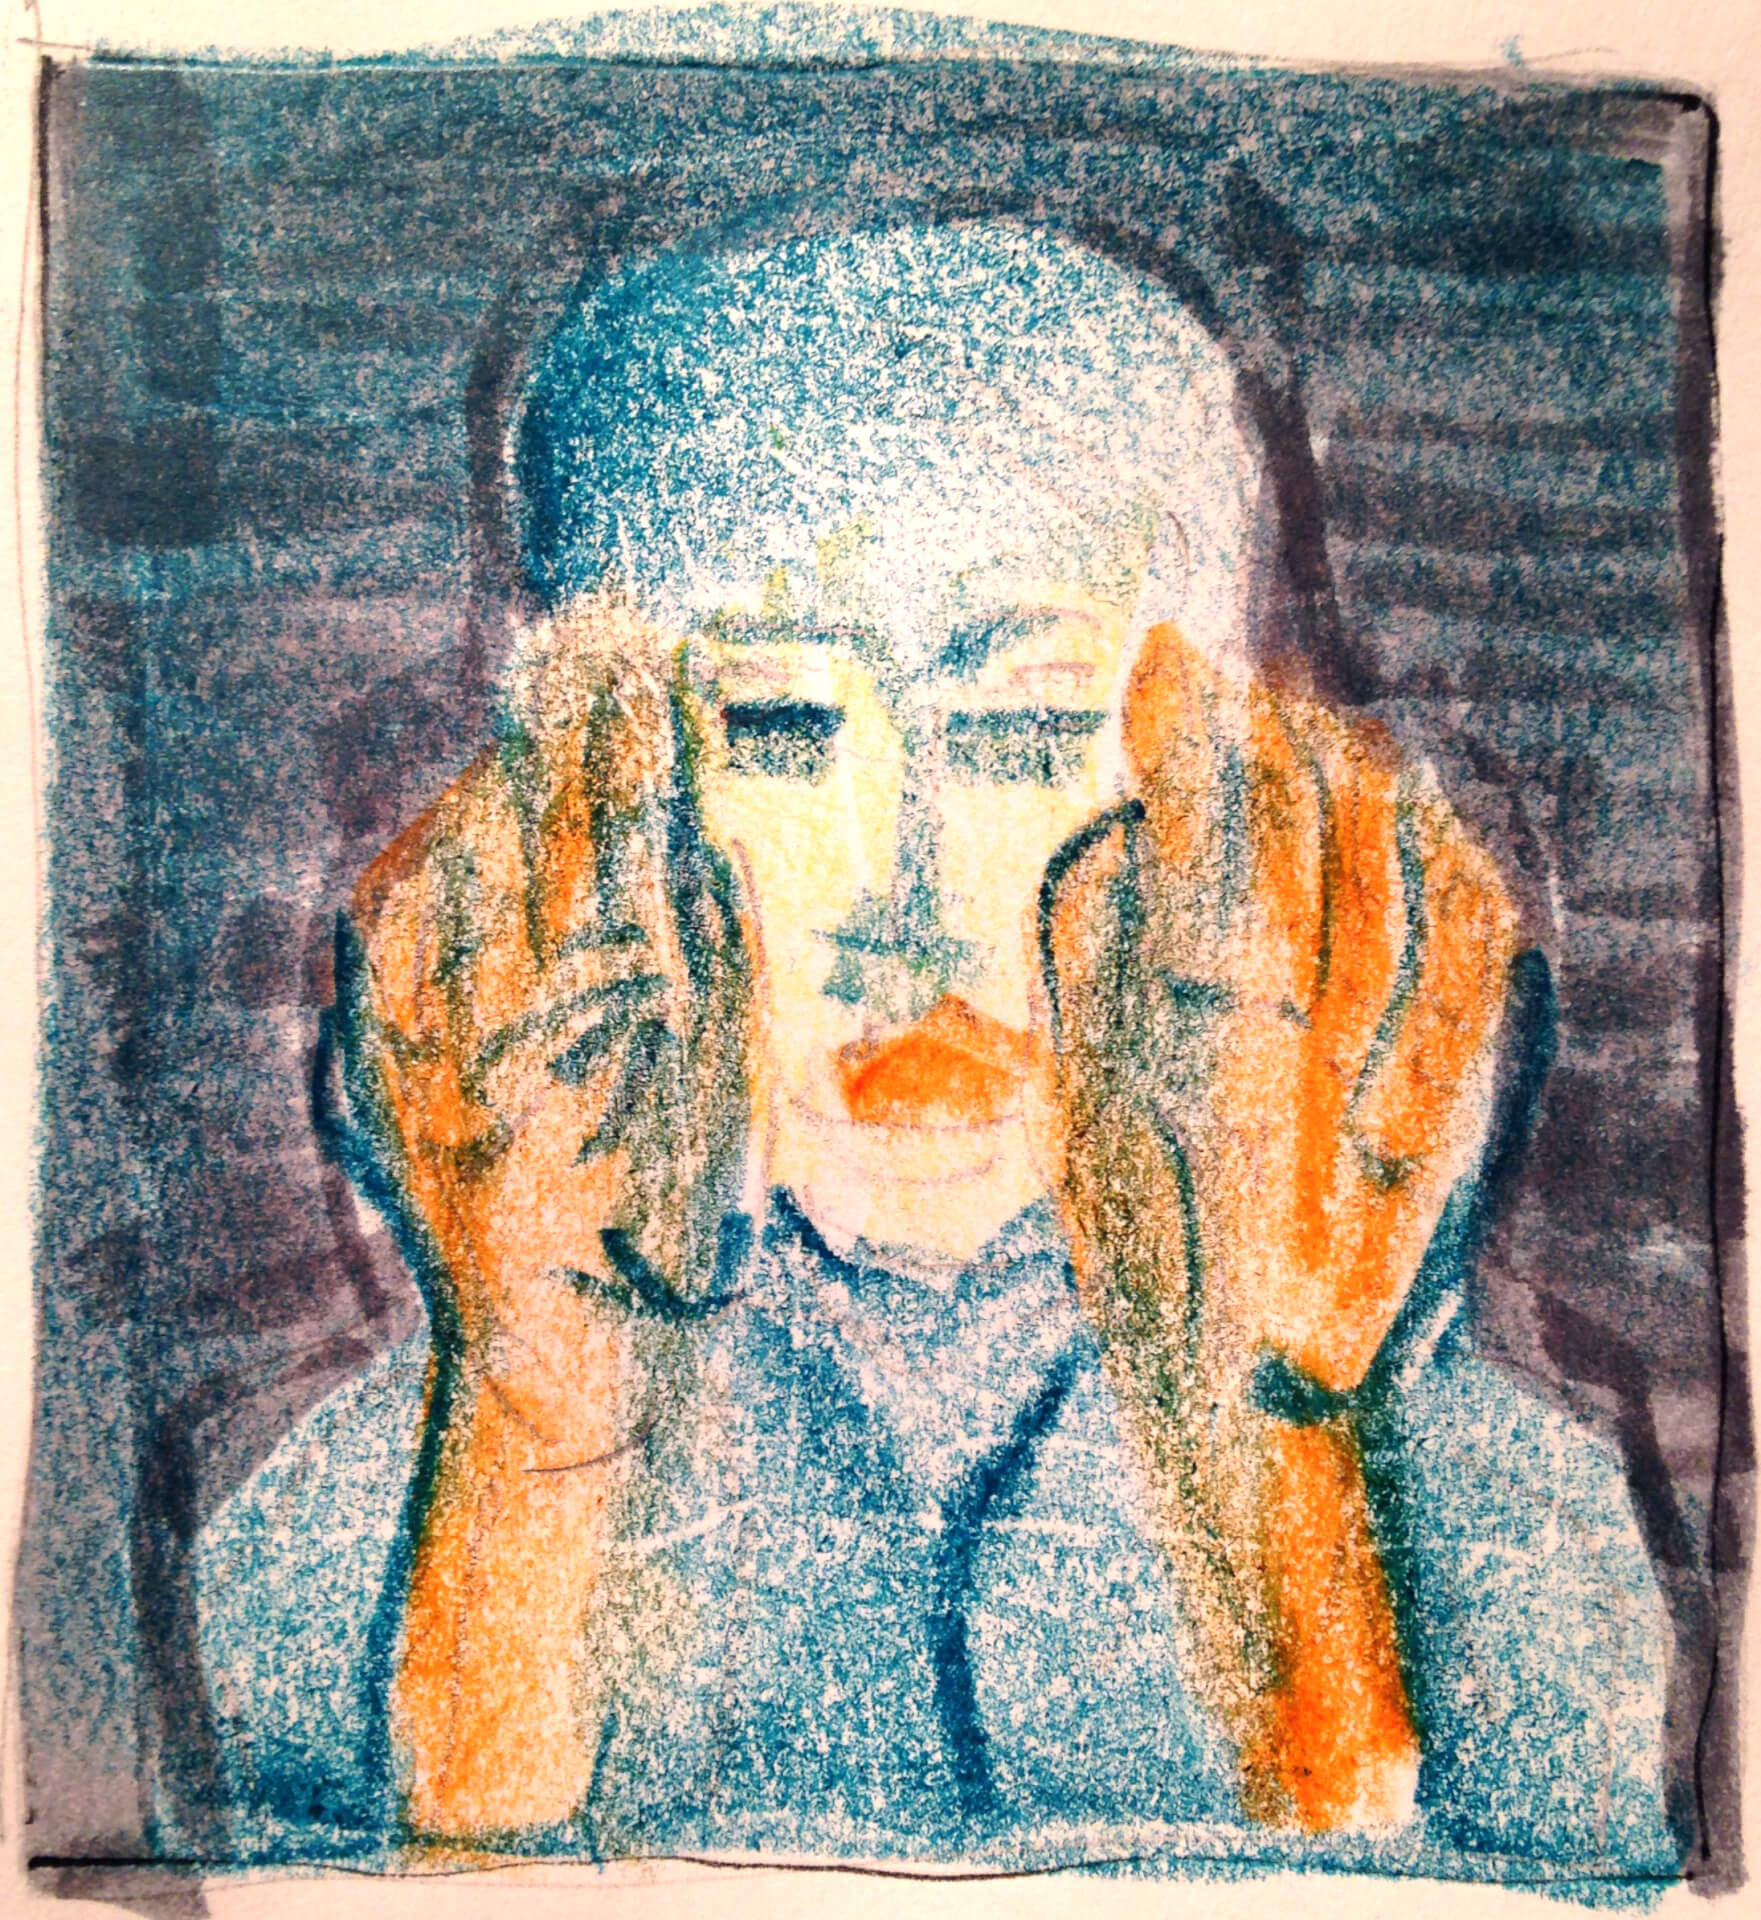 Bunte Pastellzeichnung einer Person, die mit den Händen ihr Gesicht bedeckt und im Hintergrund dezent „Stimme“ geschrieben steht.